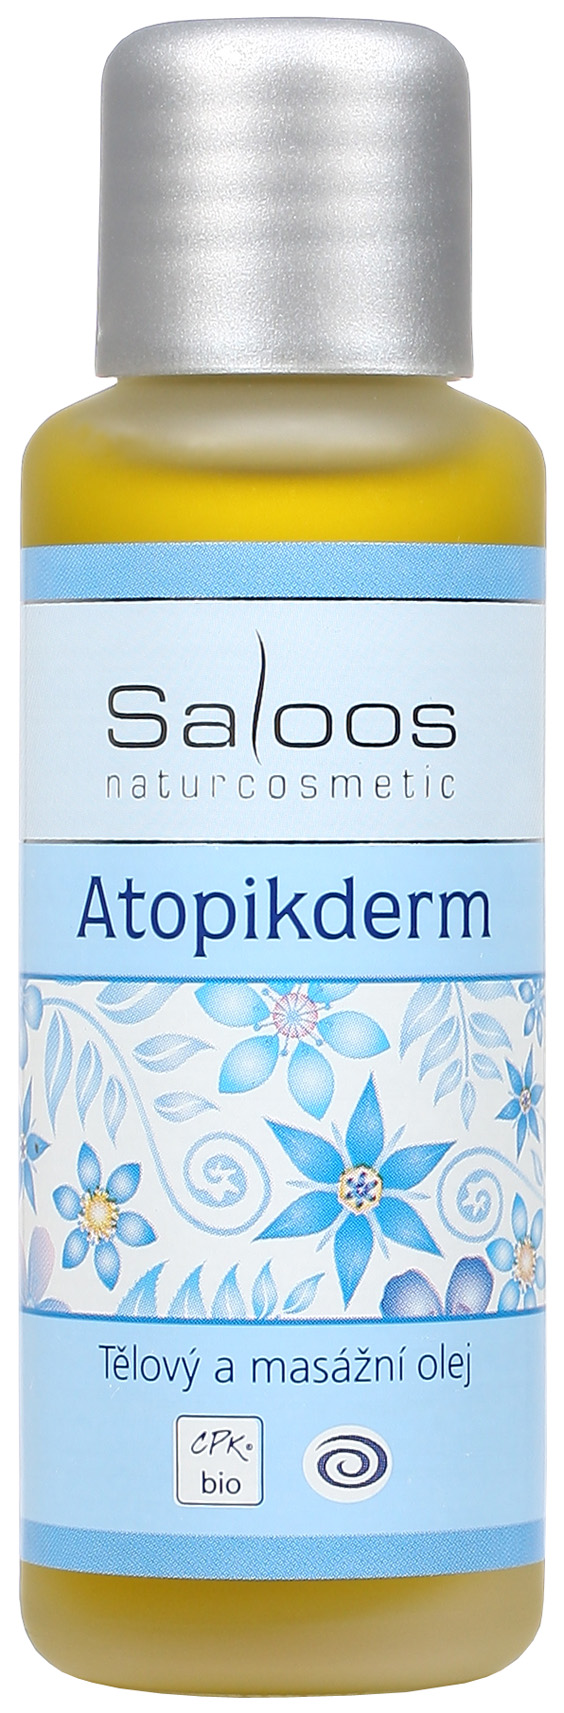 Atopikderm - tělový a masážní olej 50